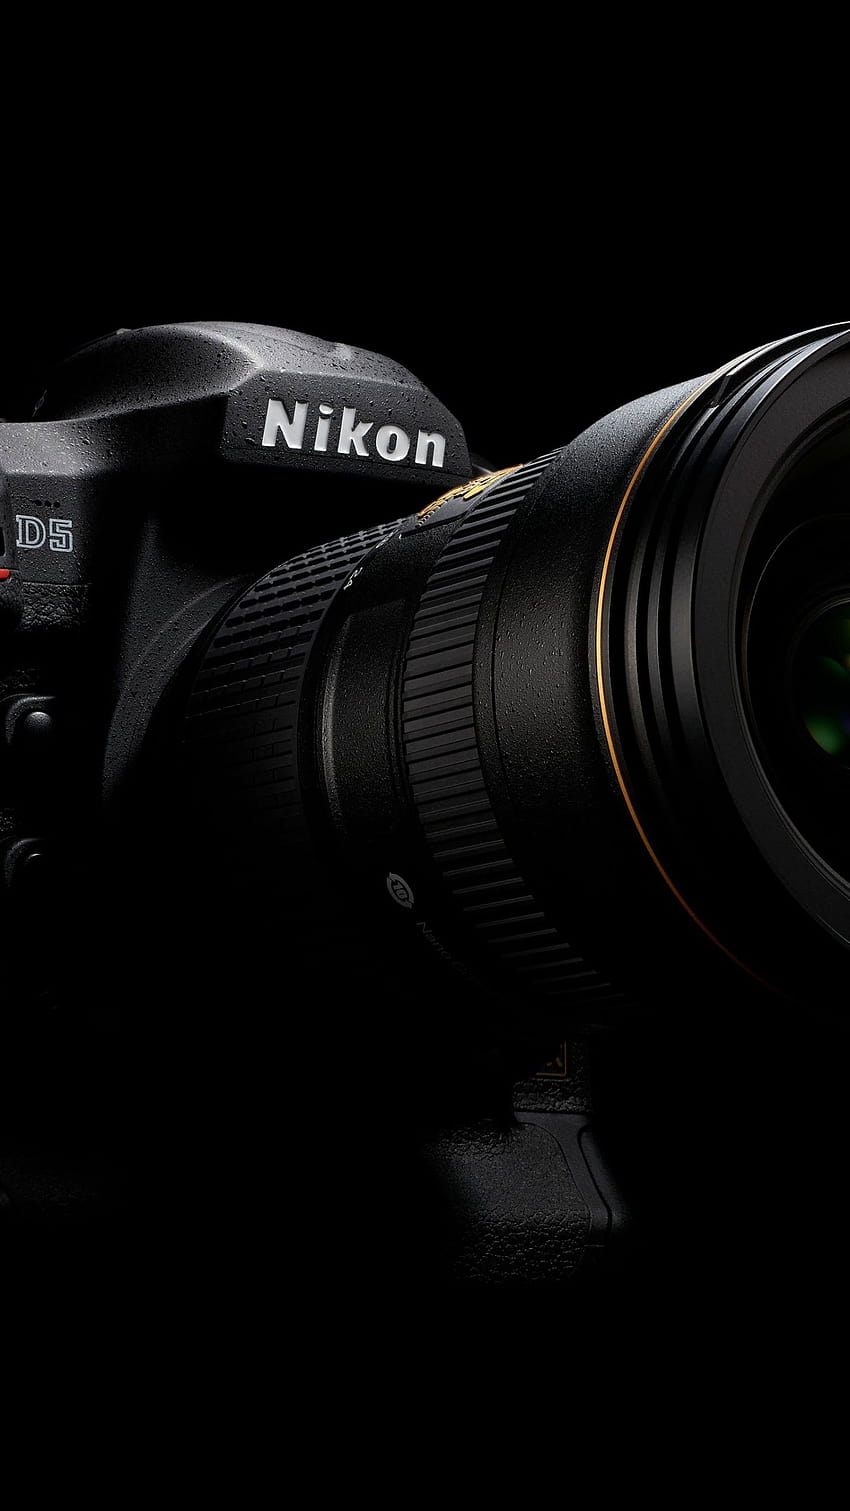 Nikon d5, kamera, DSLR, digital, review, body, video, lensa, unboxing, Hai, kamera nikon wallpaper ponsel HD